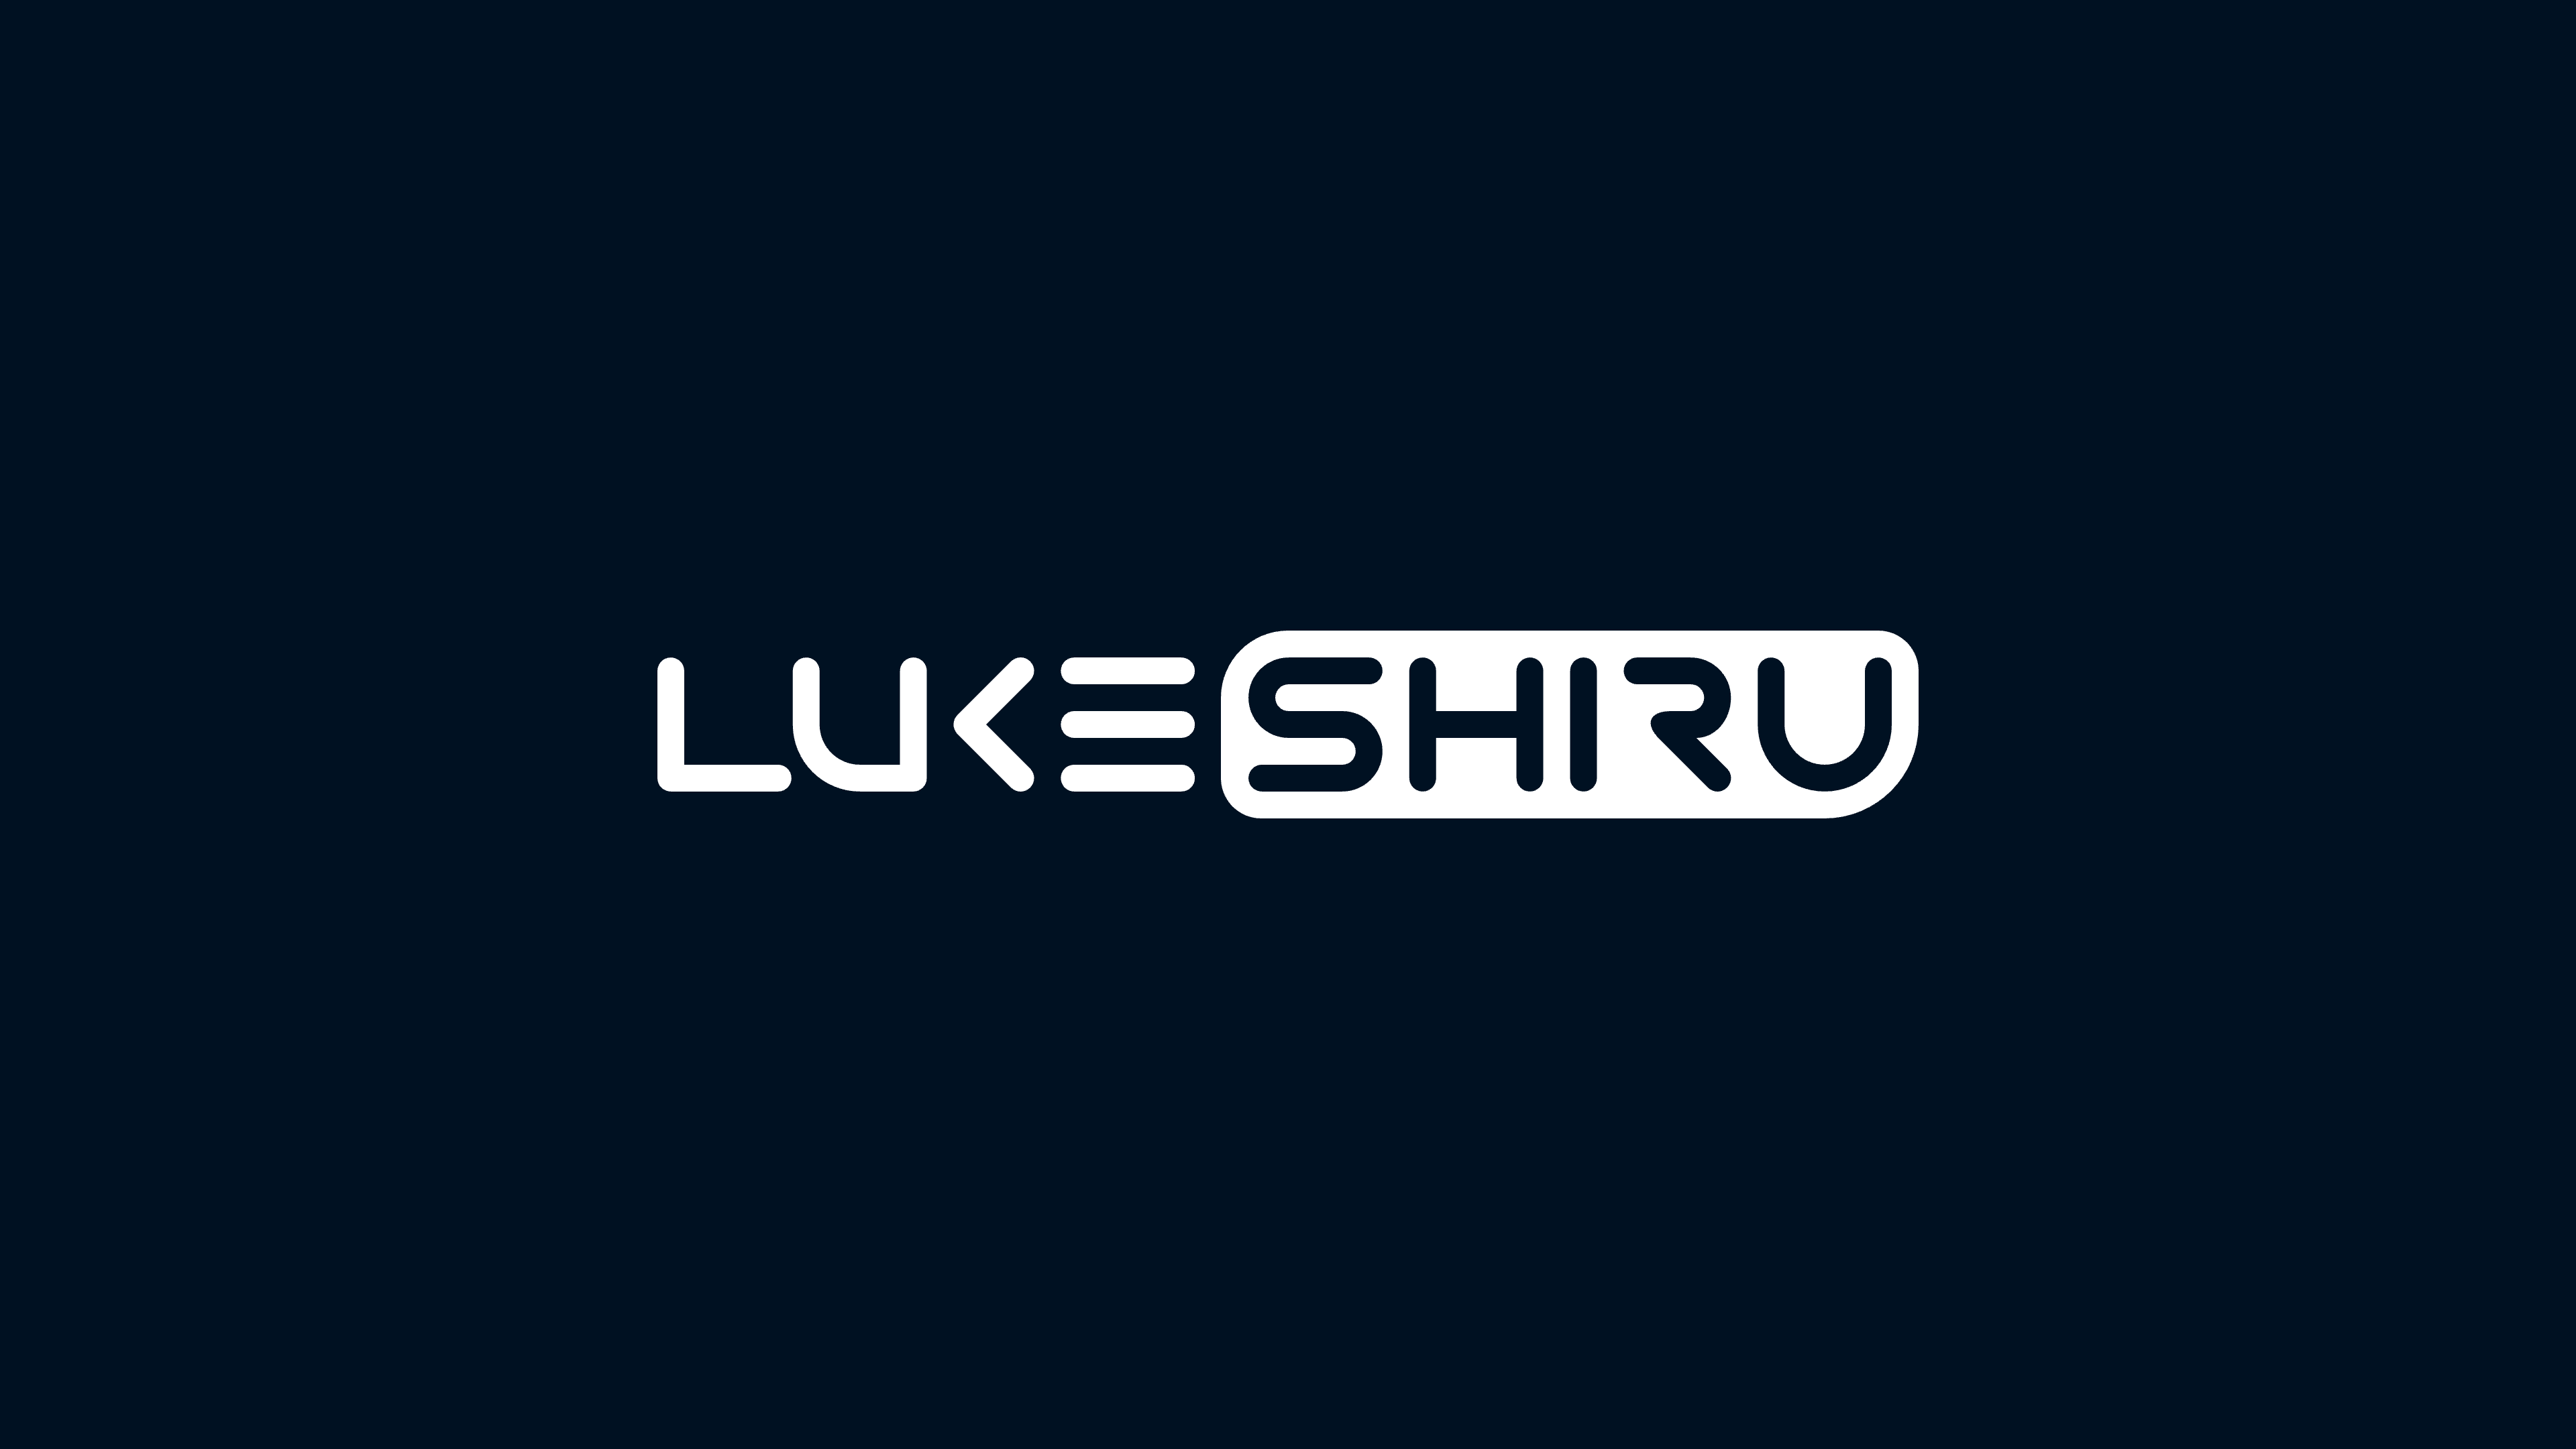 Luke Shiru